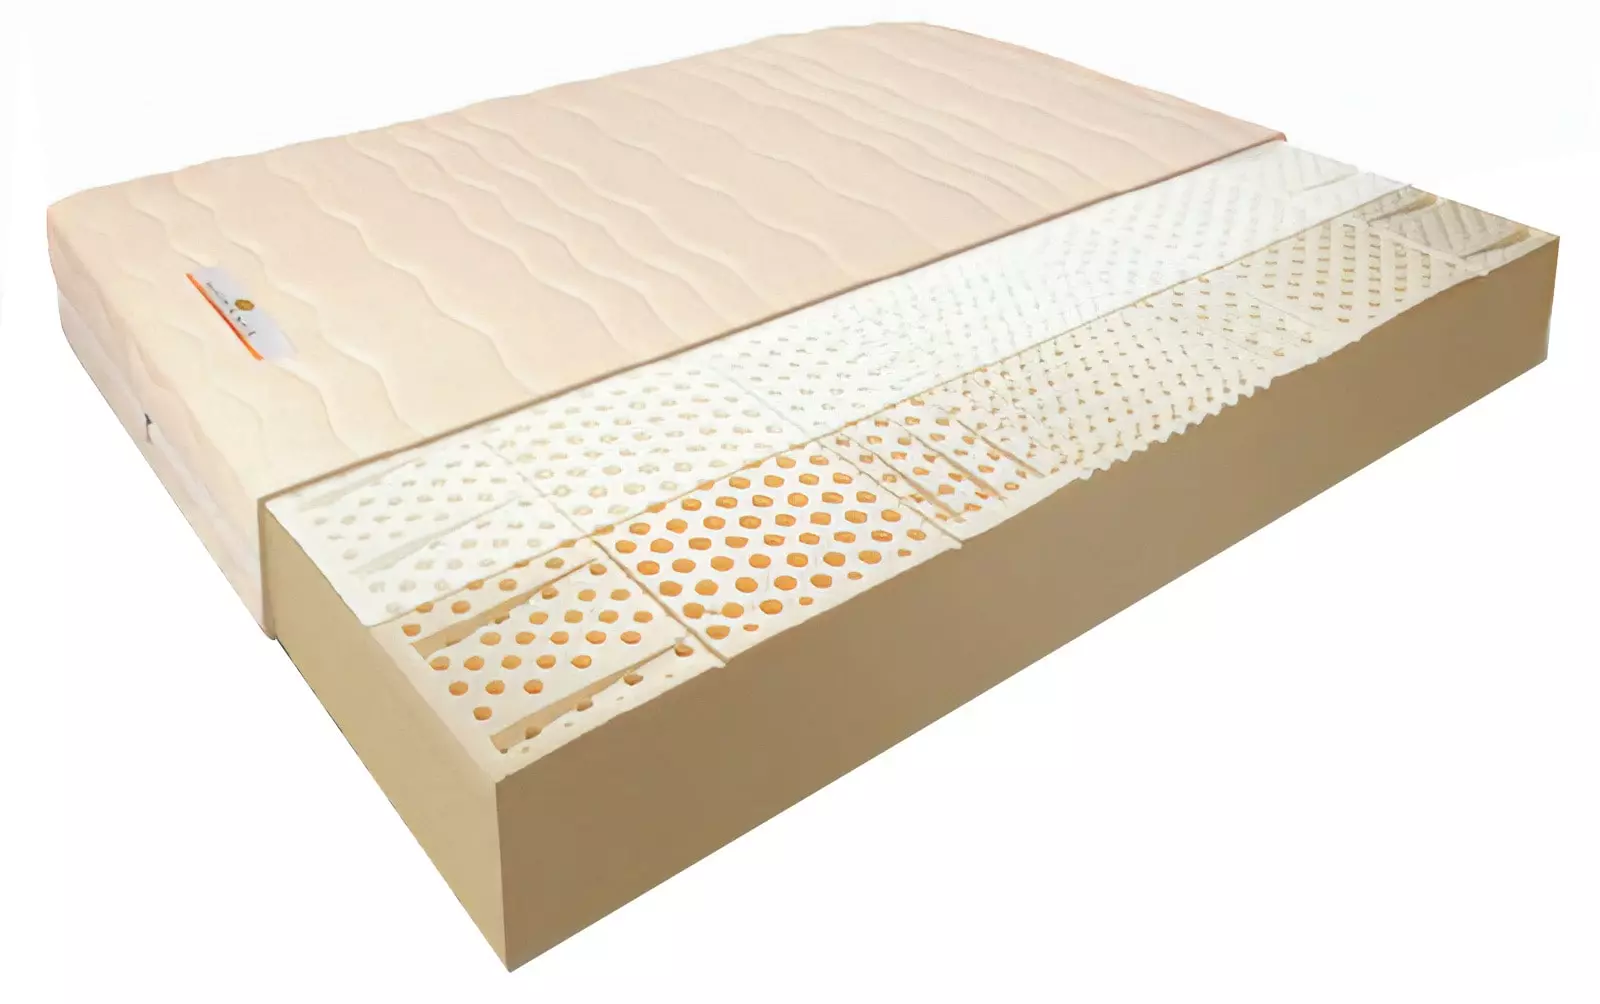 Robbanó matrac: a rugók nélküli matracok előnyei és hátrányai, 160x200, 140x200 modellek és egyéb méretek, a legjobb minőségű matracok minősítése 9823_26